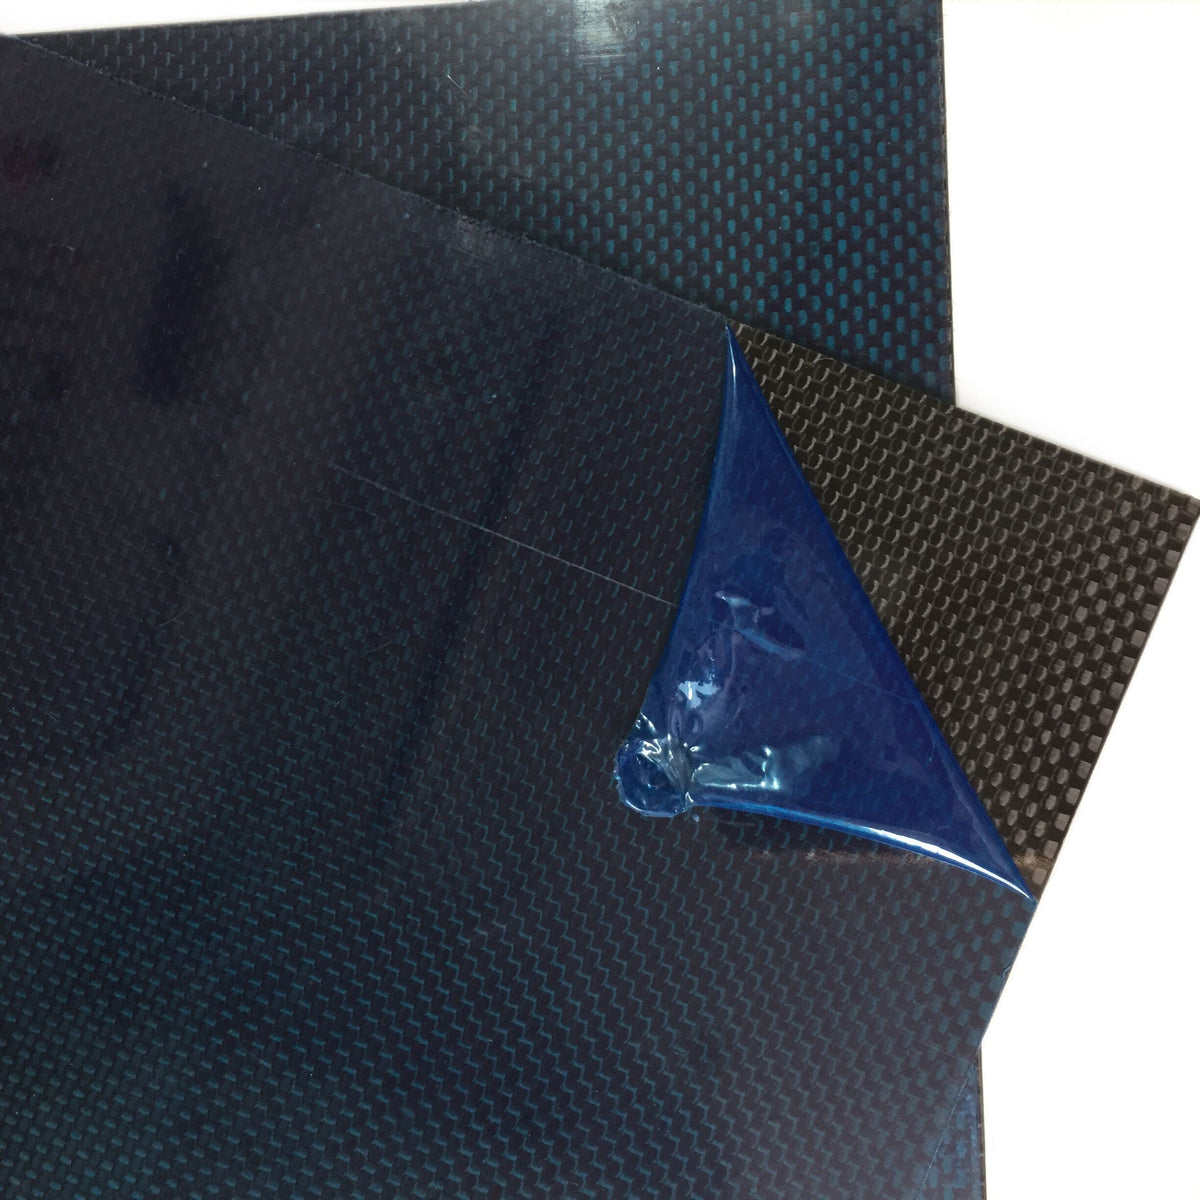 3 K 100% fibra de carbono panel de placa de placa de placa de panel puro  laminado liso tejido brillante superficie para RC Quadcopter Drone,19.685  in